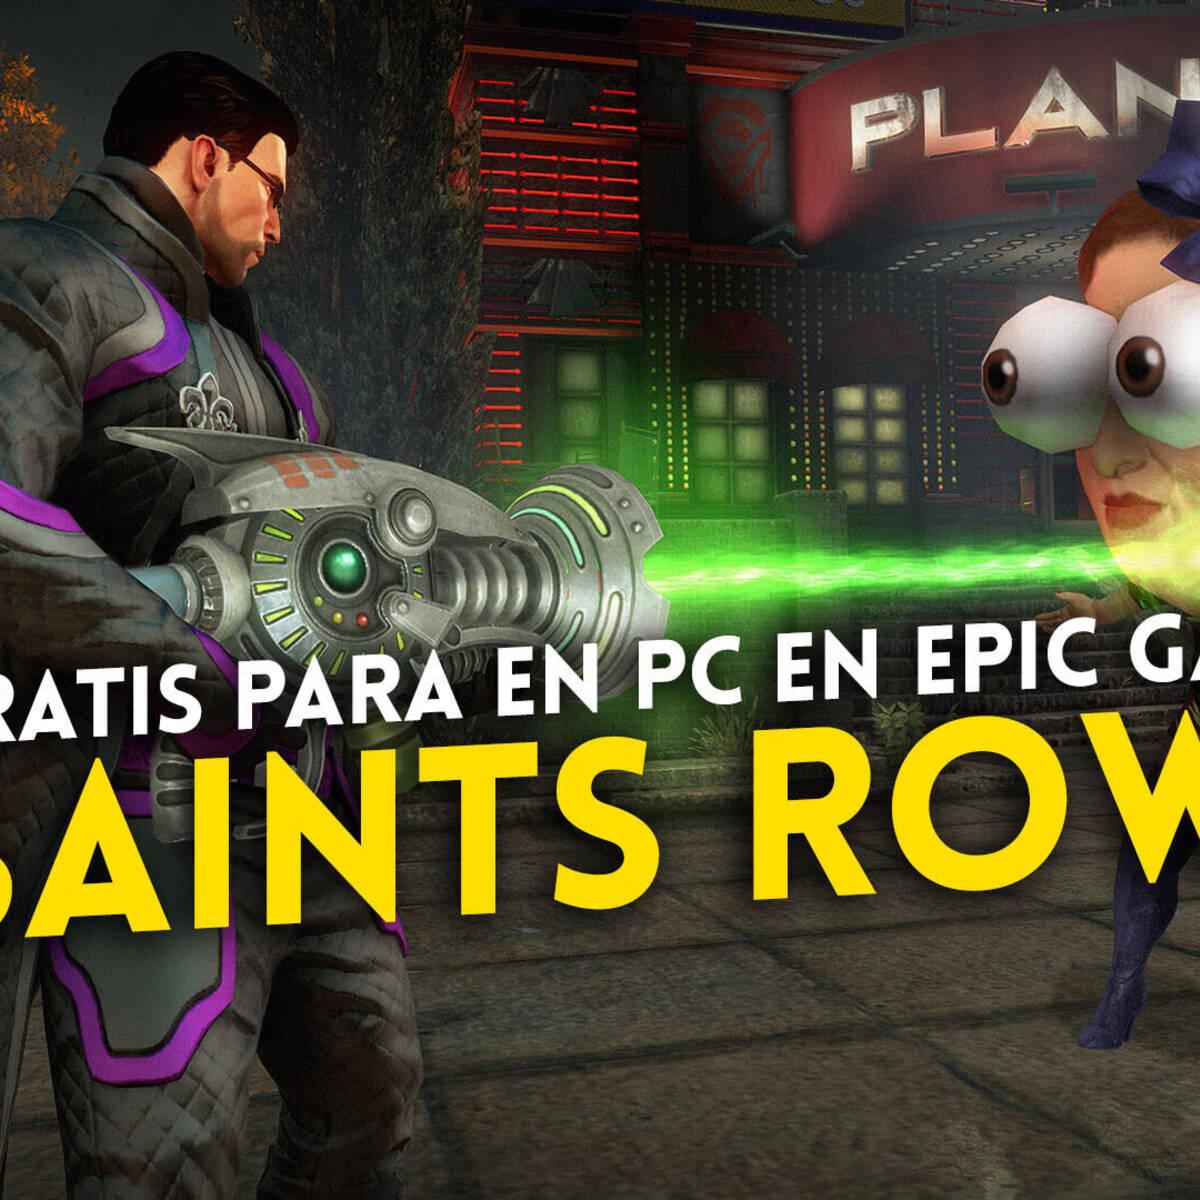 Prévia prática de Saints Row para PC - Epic Games Store